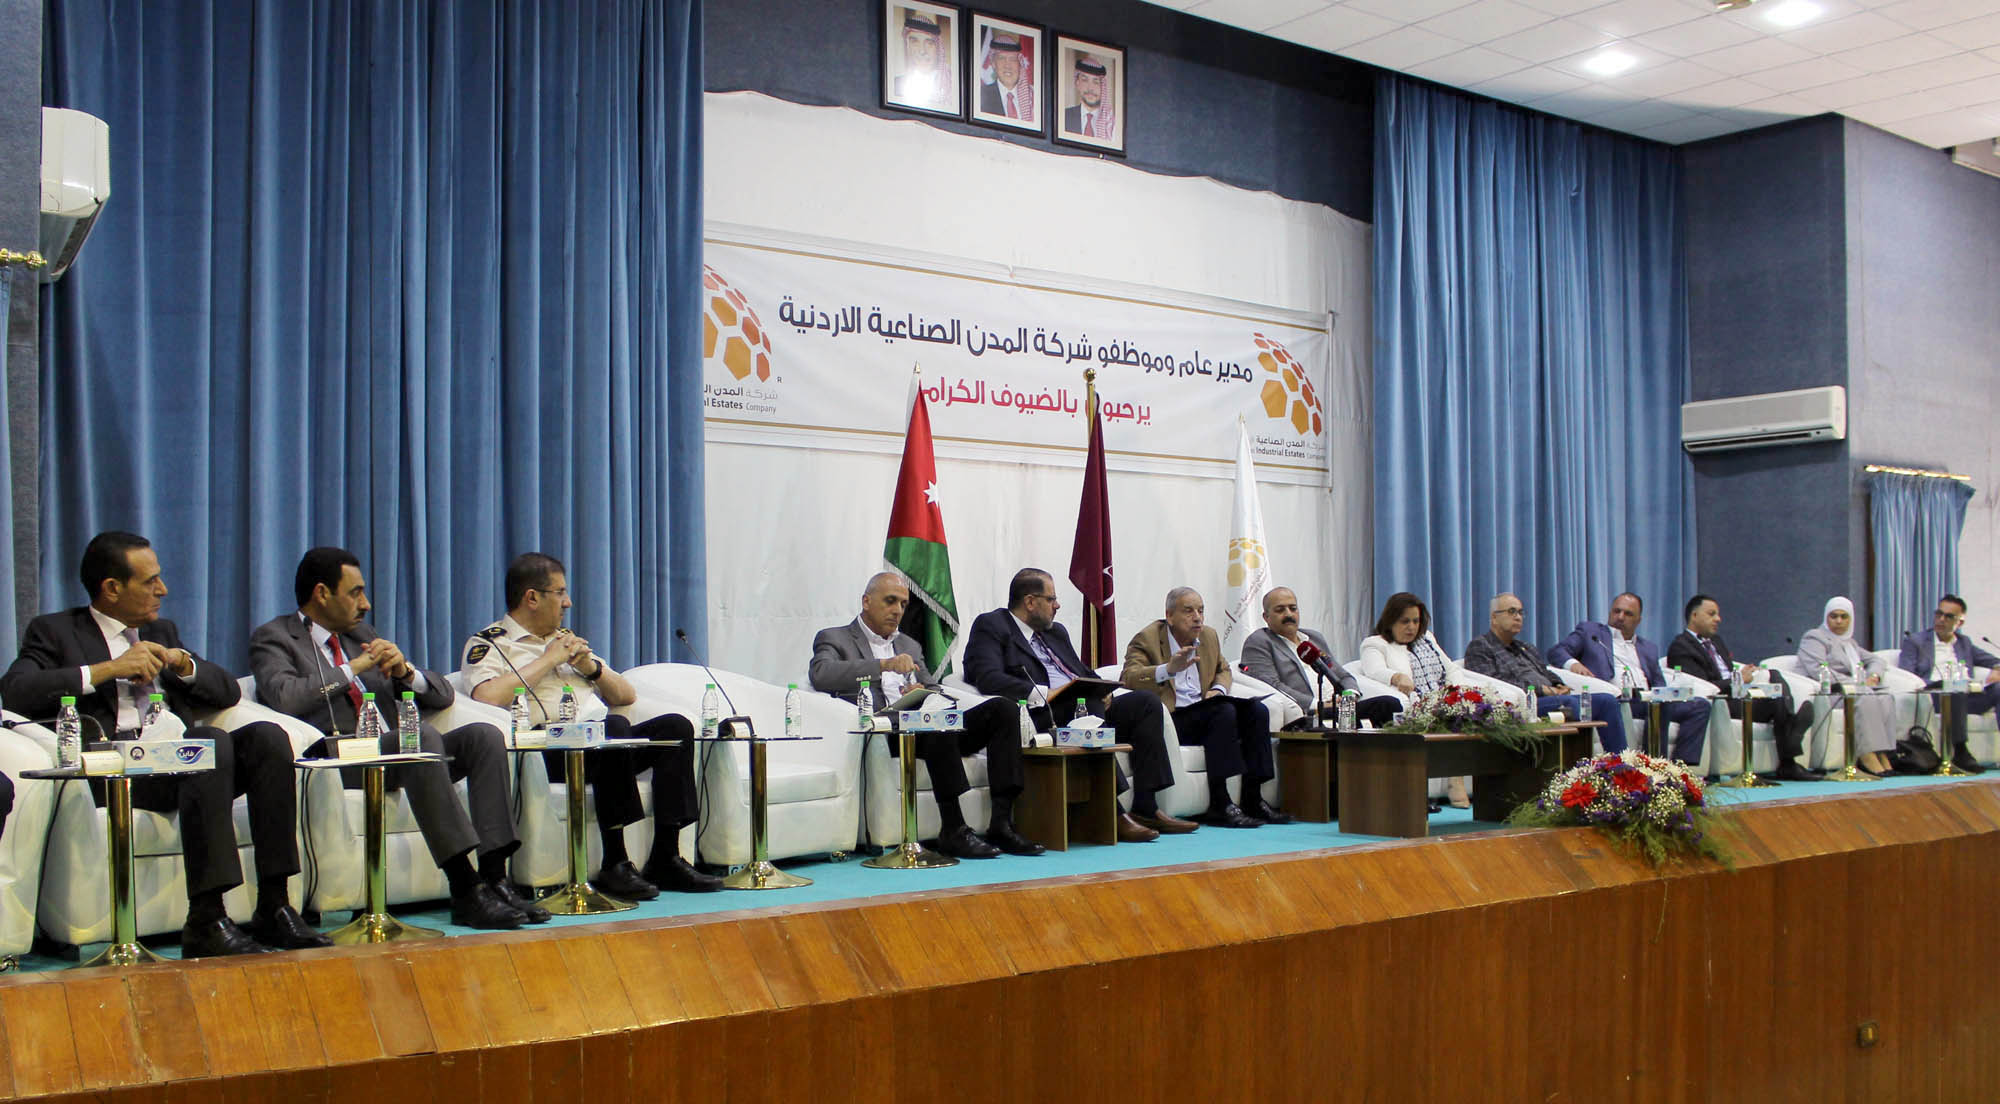 فريق وزاري يناقش تحديات القطاع الصناعي في مدينة الحسن